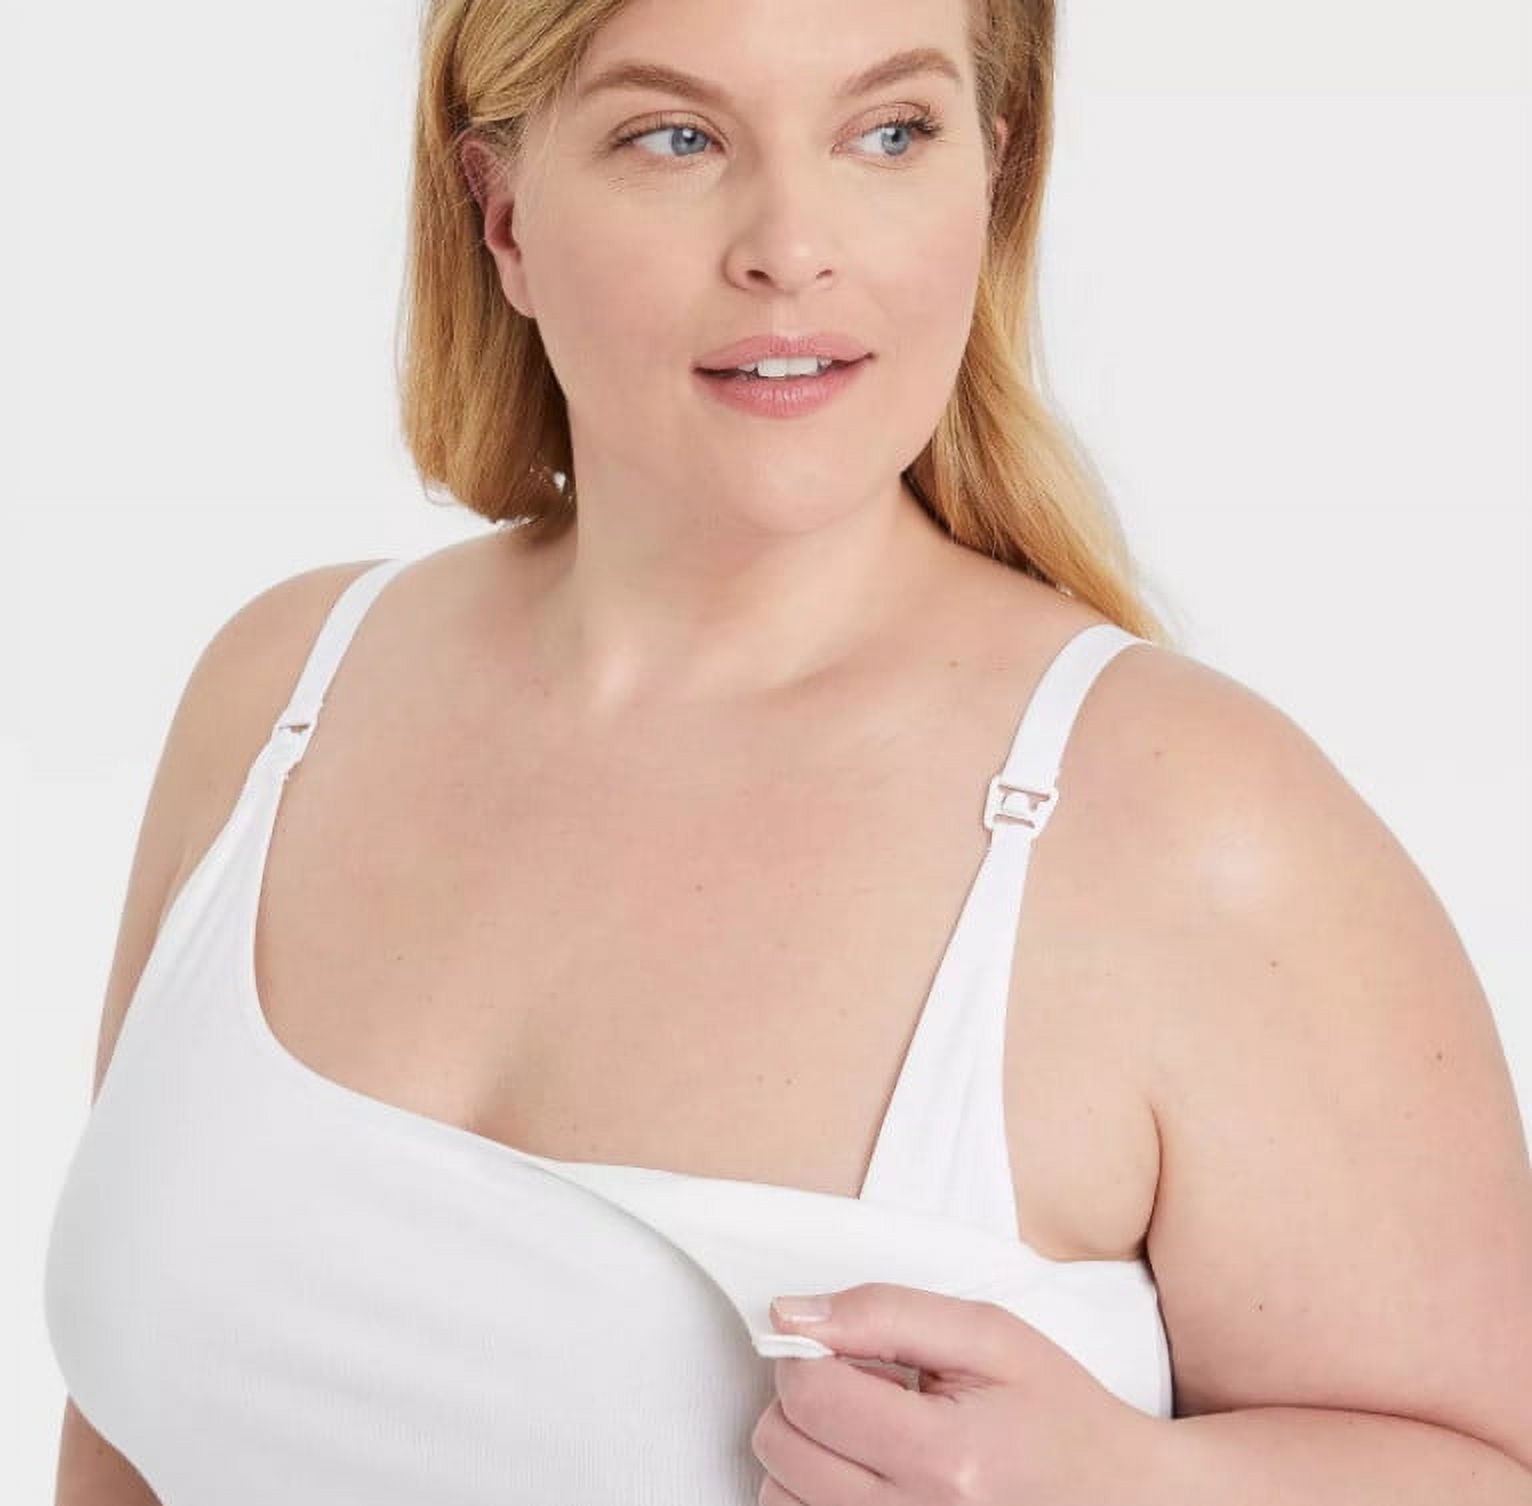 Gilligan O'Malley Women's Plus Size Nursing Cami - White - 2XL